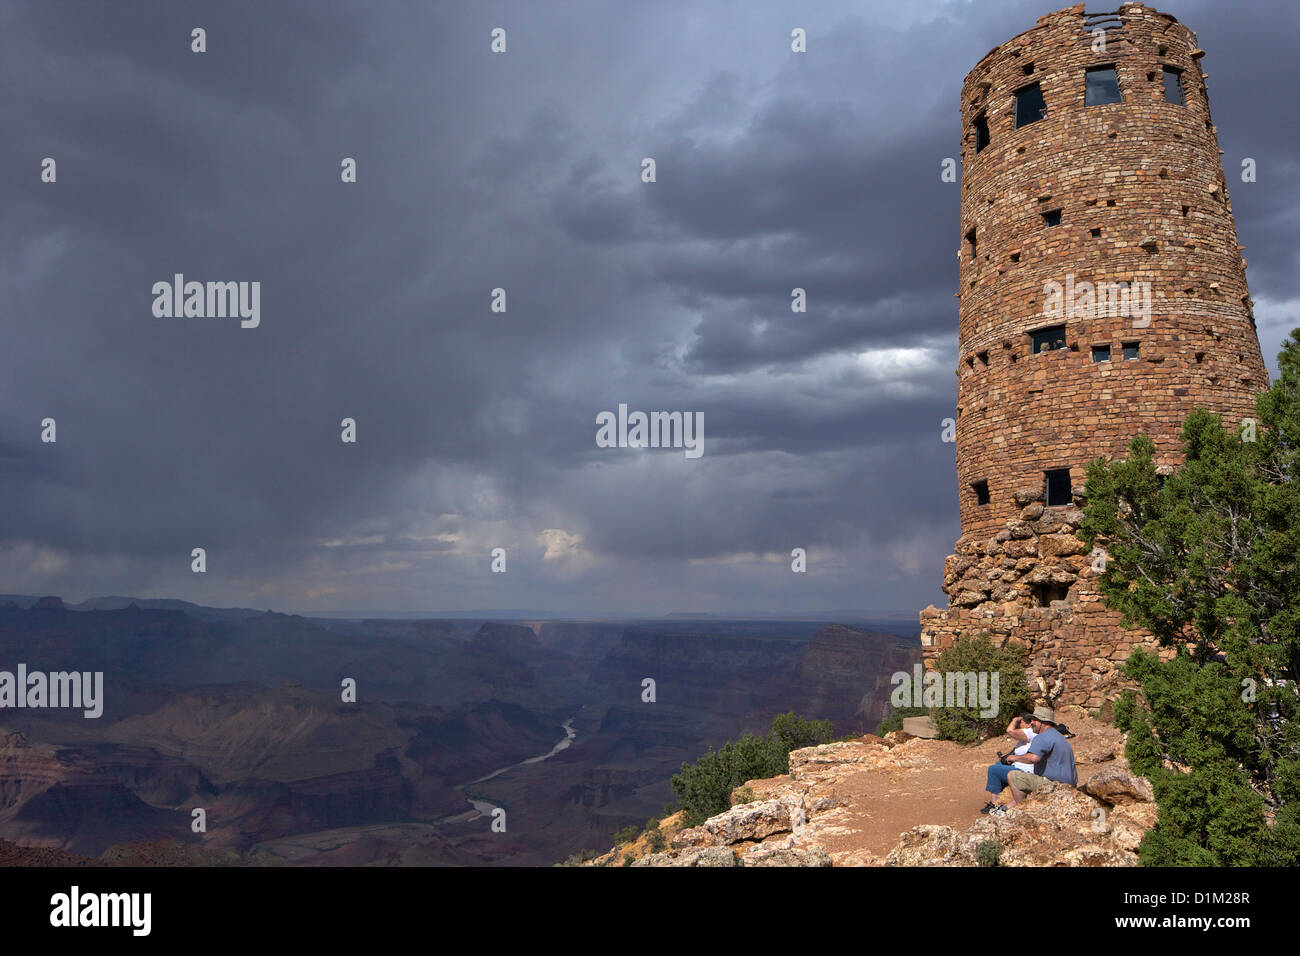 Le temps orageux à Desert View Watchtower, ou Indien de guet, Rive Sud, le Parc National du Grand Canyon, Arizona, USA Banque D'Images